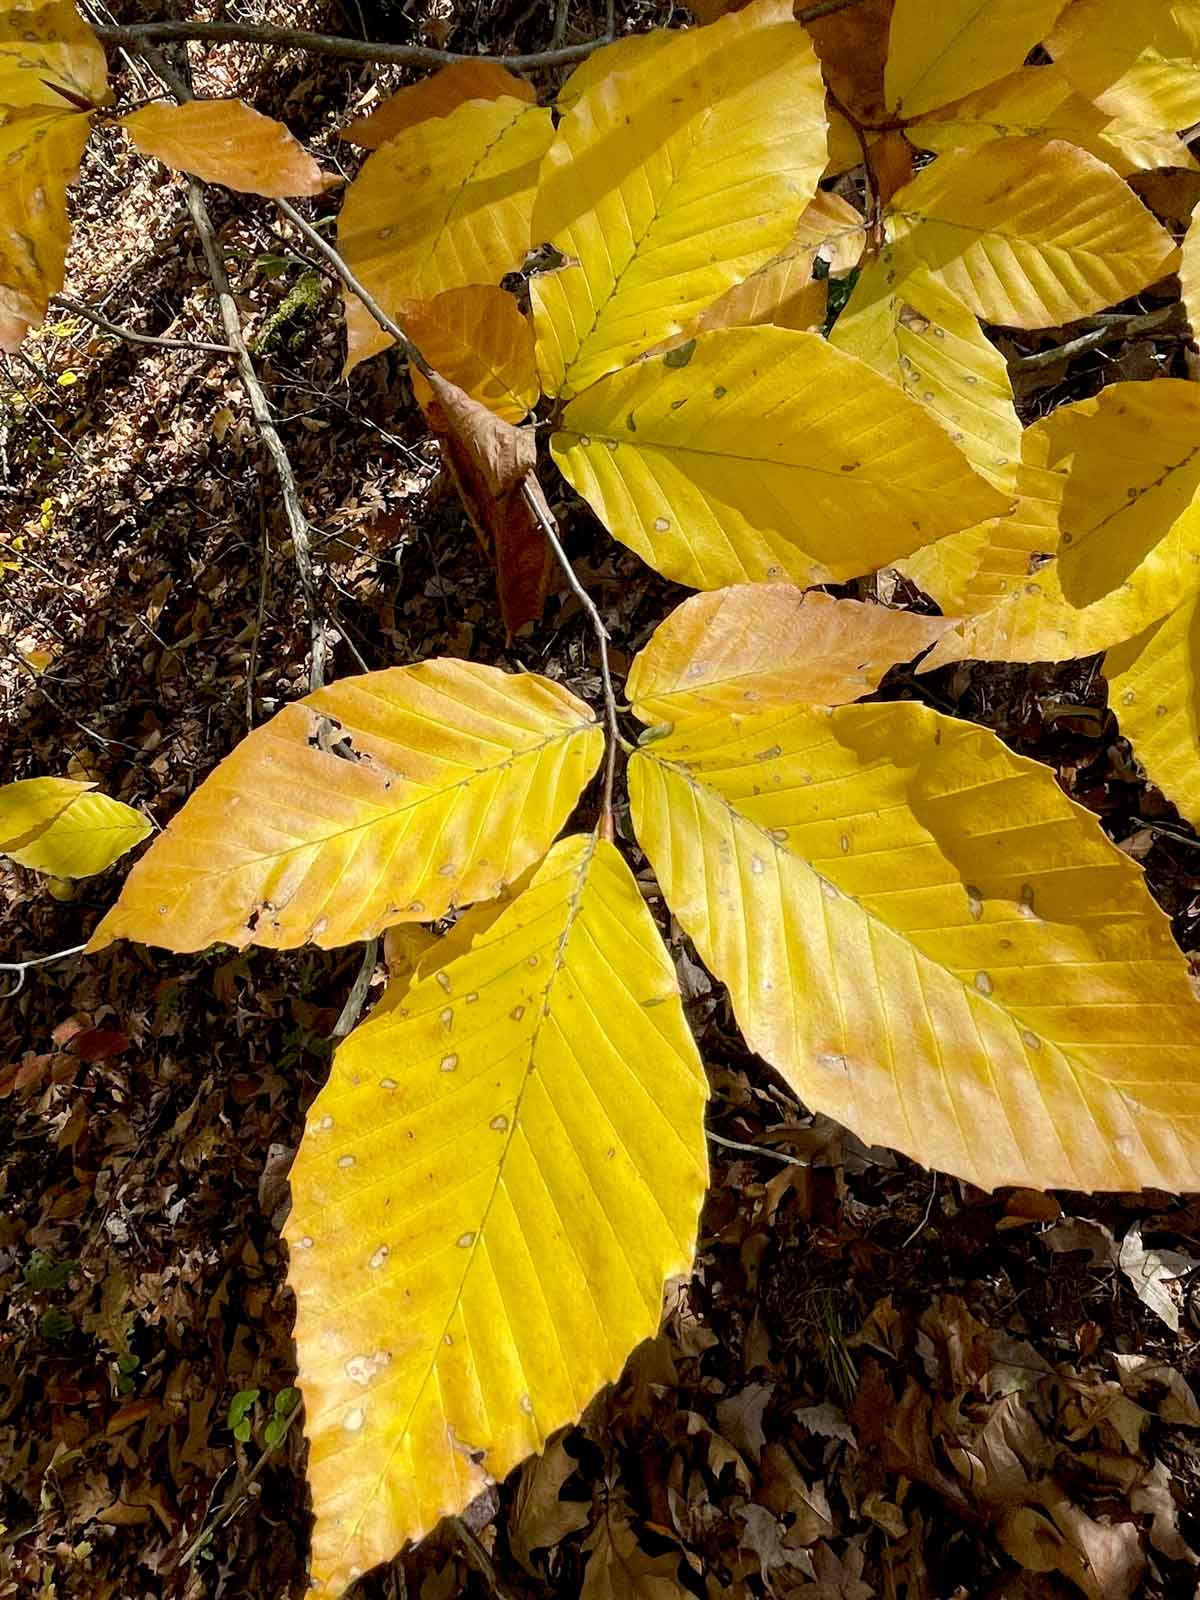 Beech tree leaves are at their peak of golden splendor in November in the Ozarks.